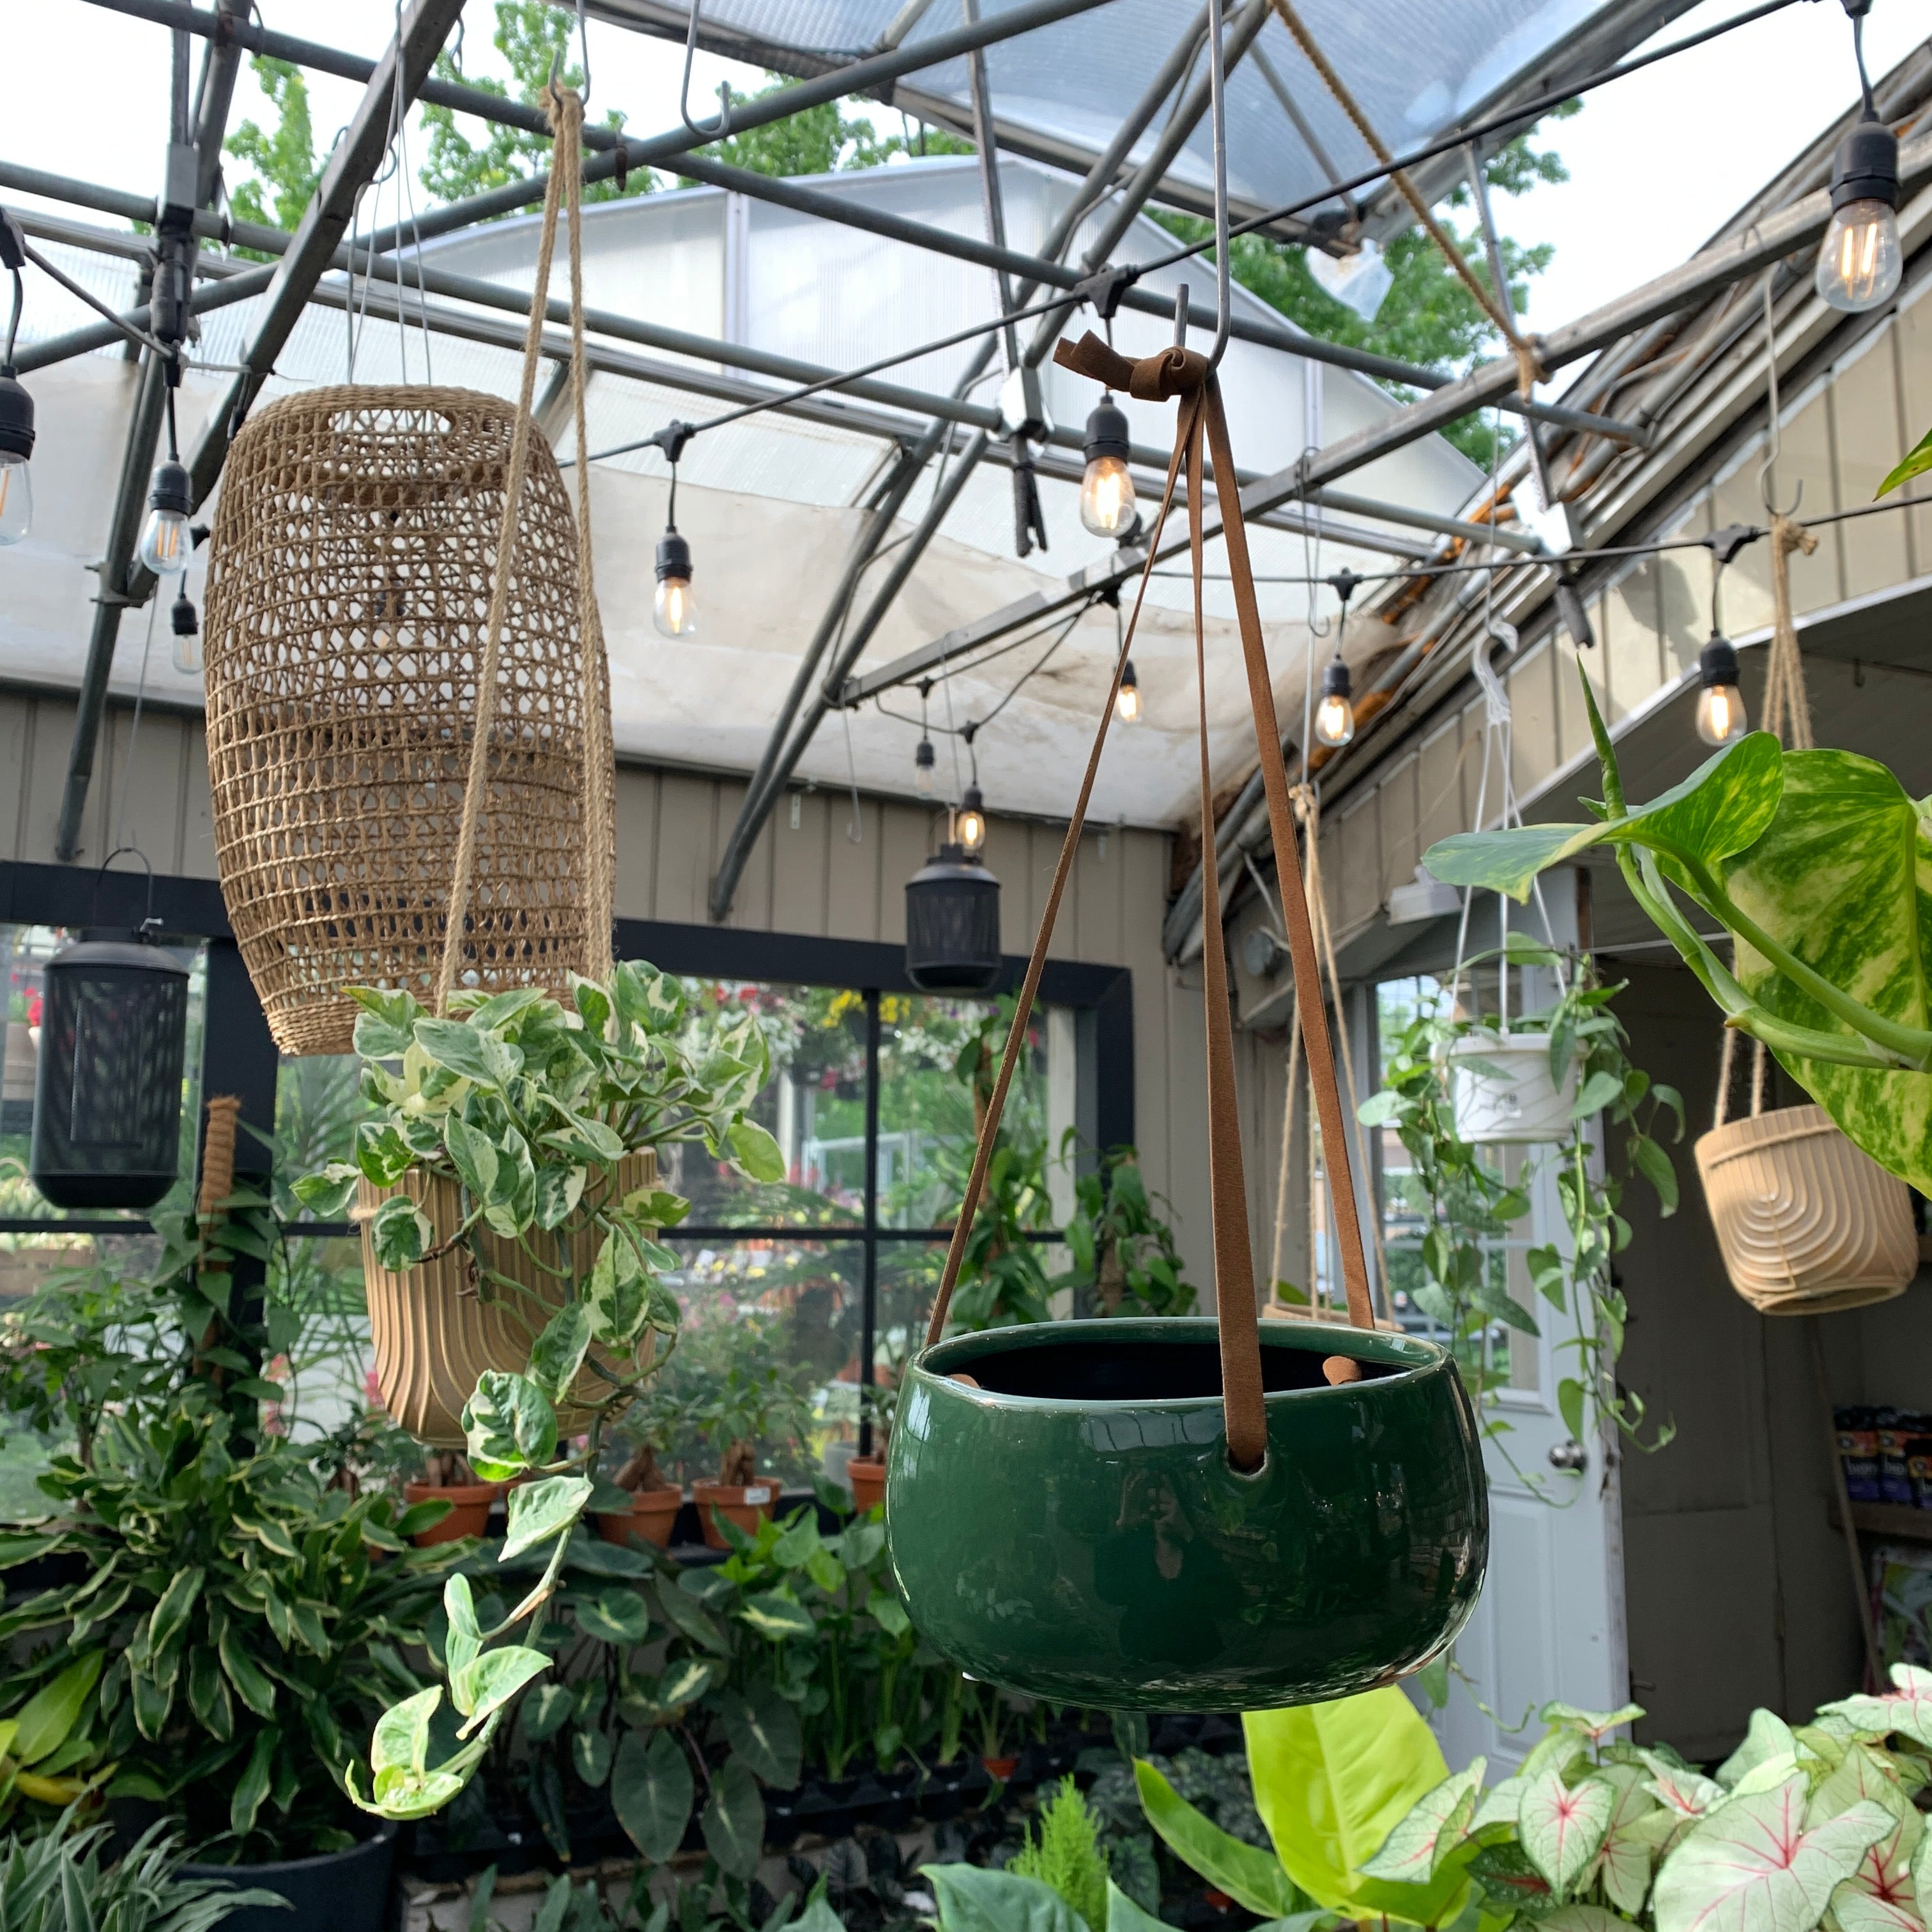 Hanging green planter